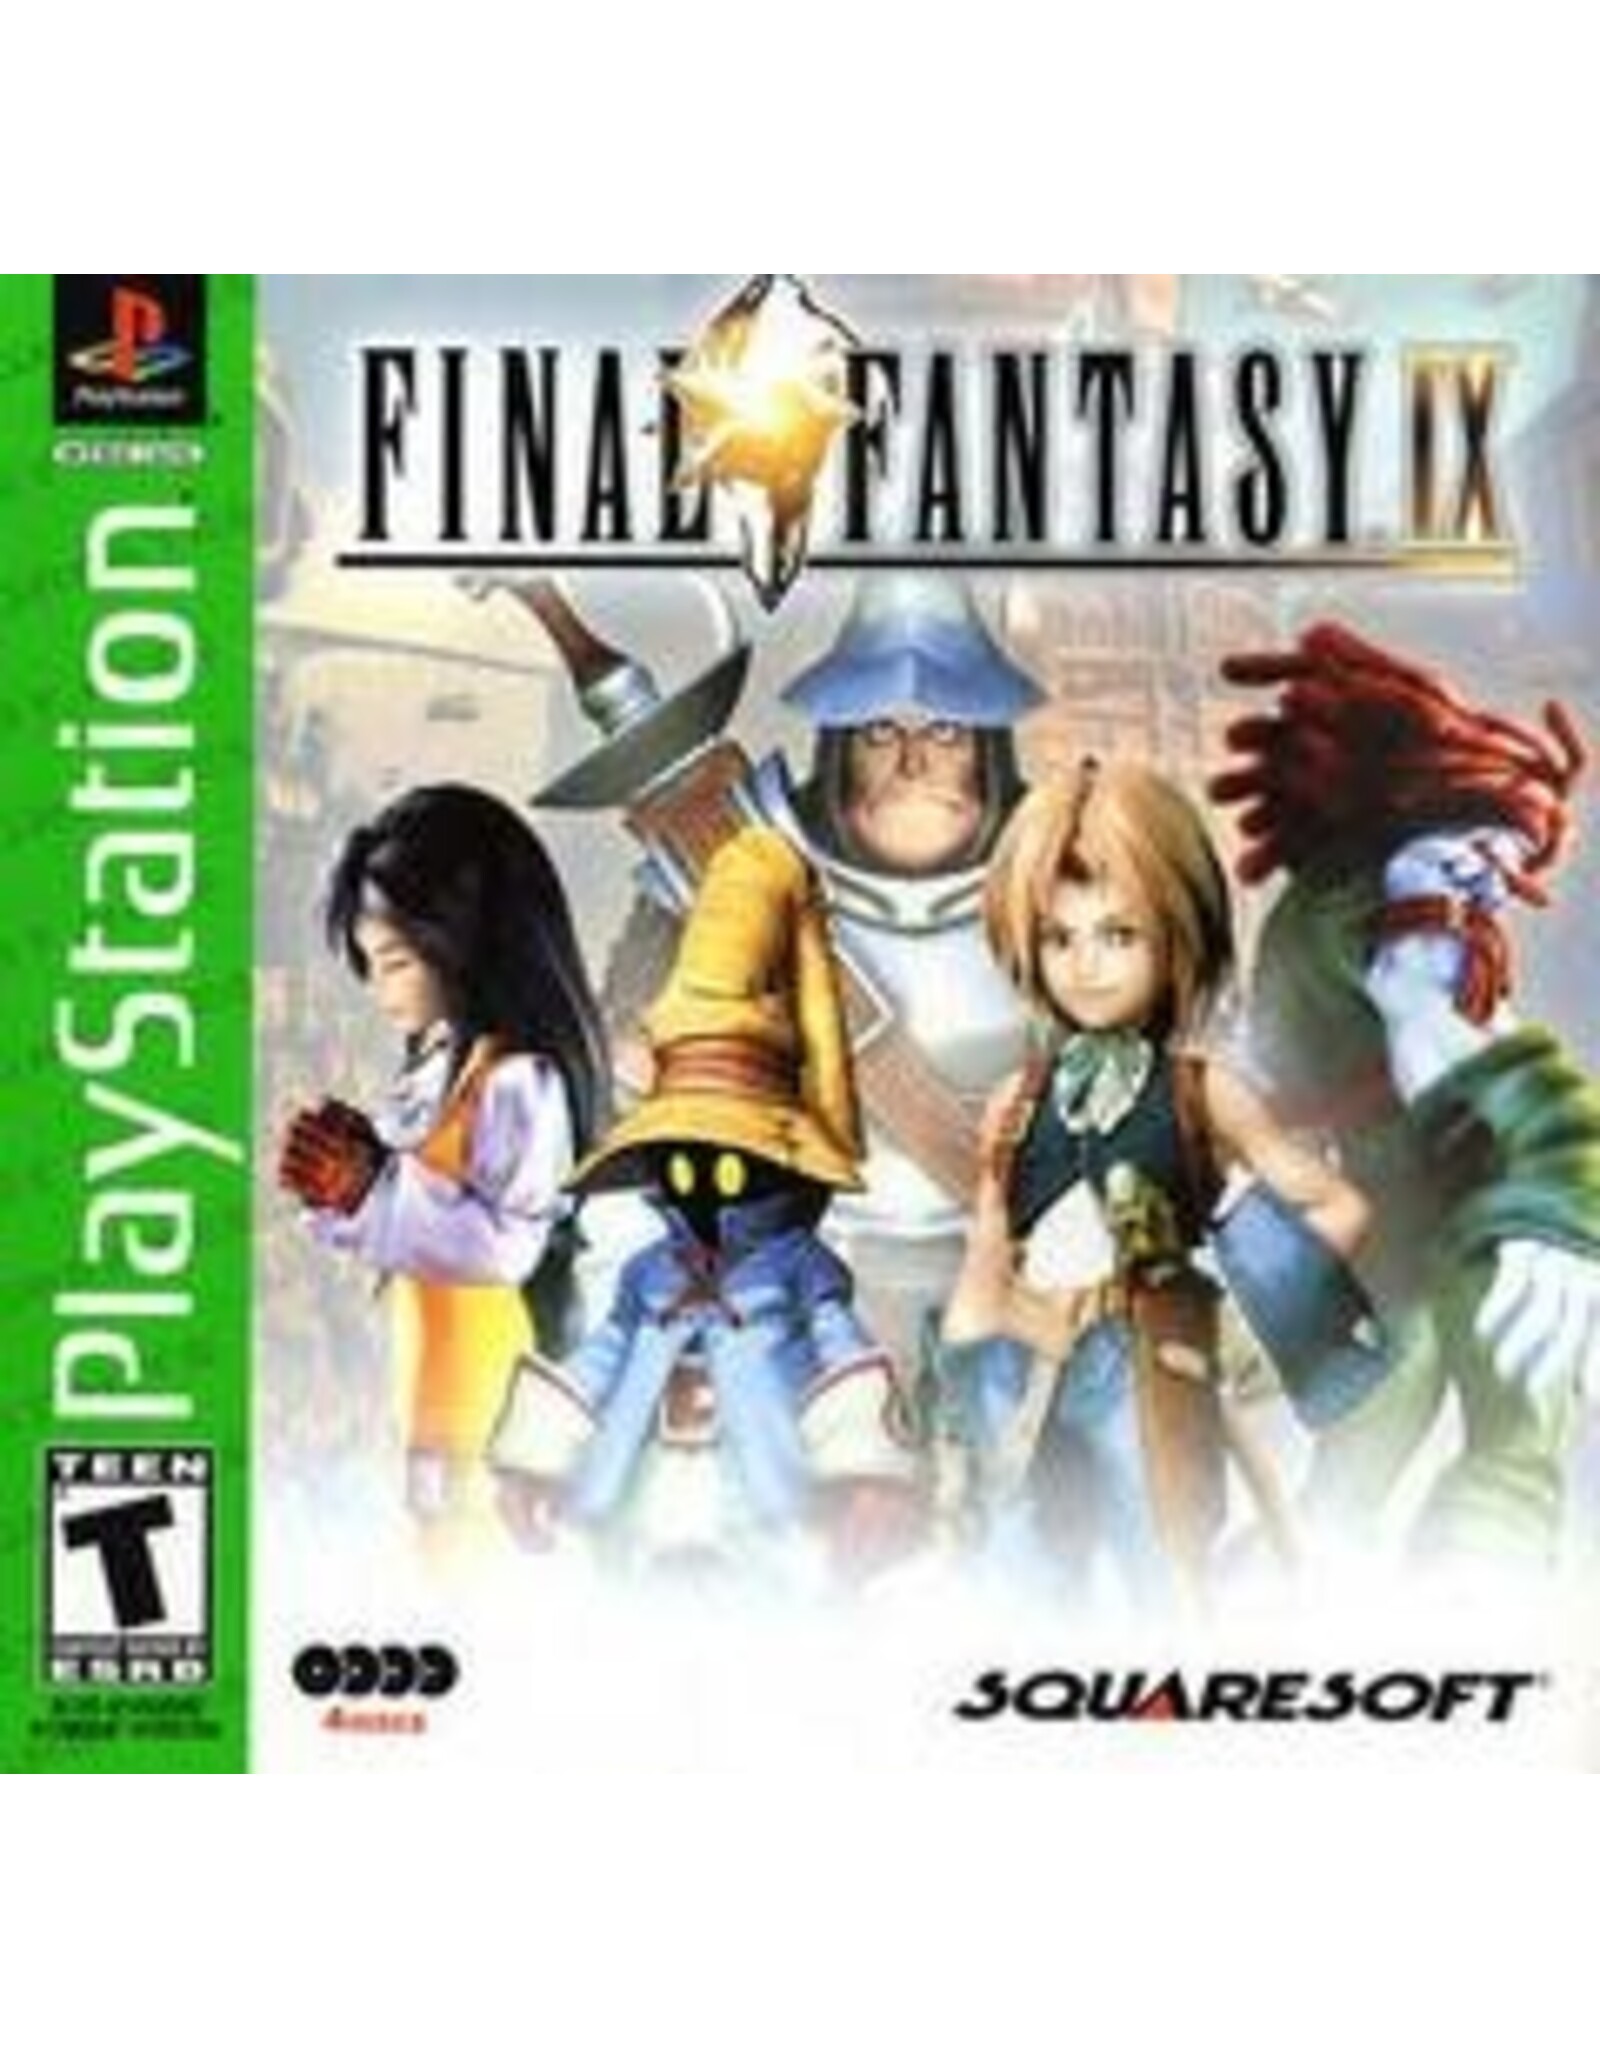 Playstation Final Fantasy IX (Greatest Hits, No Manual)